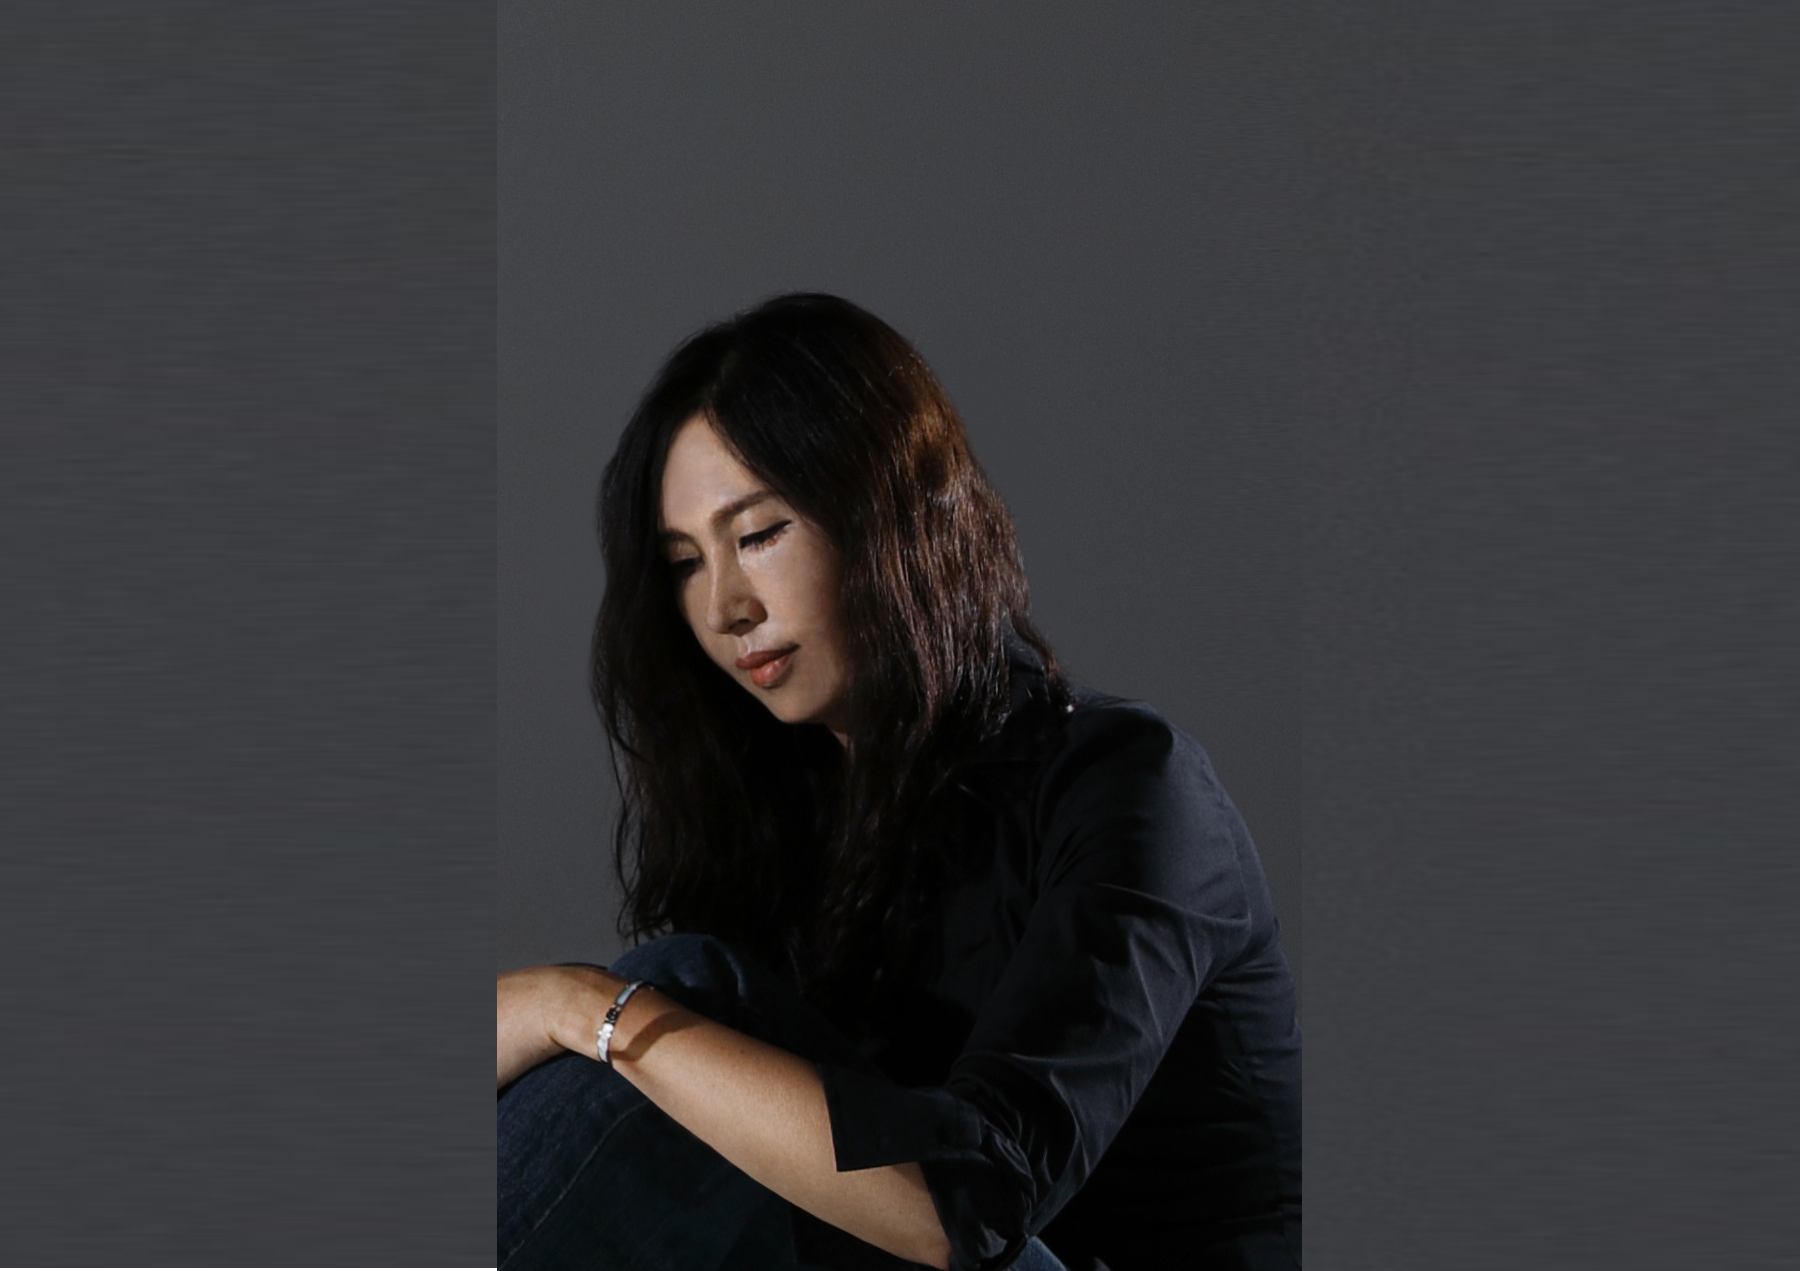 김선영 작가 개인전, 청담동 갤러리 ‘ArtFin(아트핀)’에서 개최